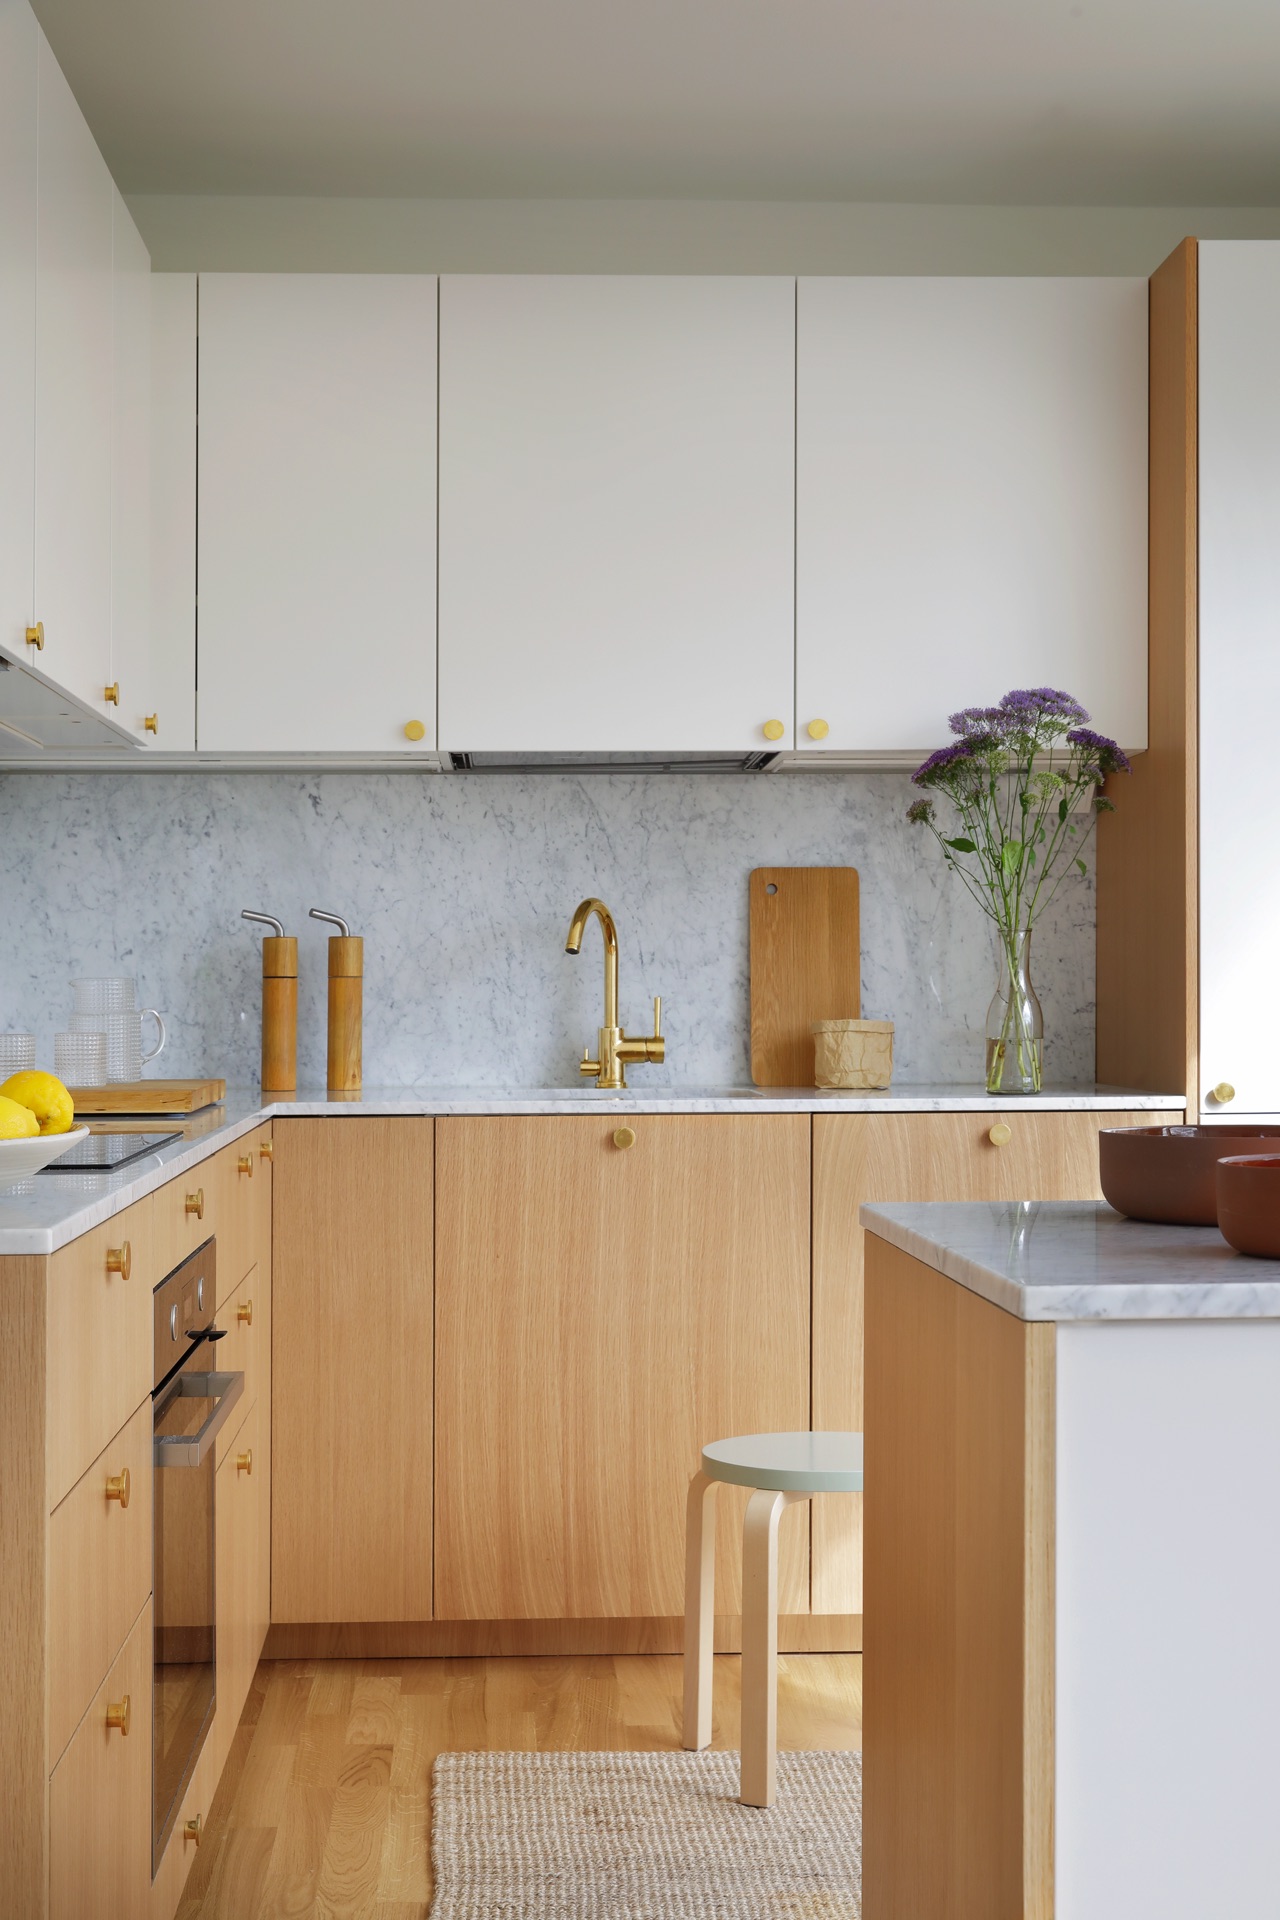 Spiegelt geschmackvoll Skandi-Stil wieder: die Küche „Ingarö“ von Helsingö. Dazu trägt die Kombi aus Weiß und hellem Holz bei und die goldfarbenen Akzente, abgerundet durch eine Prise Marmor.